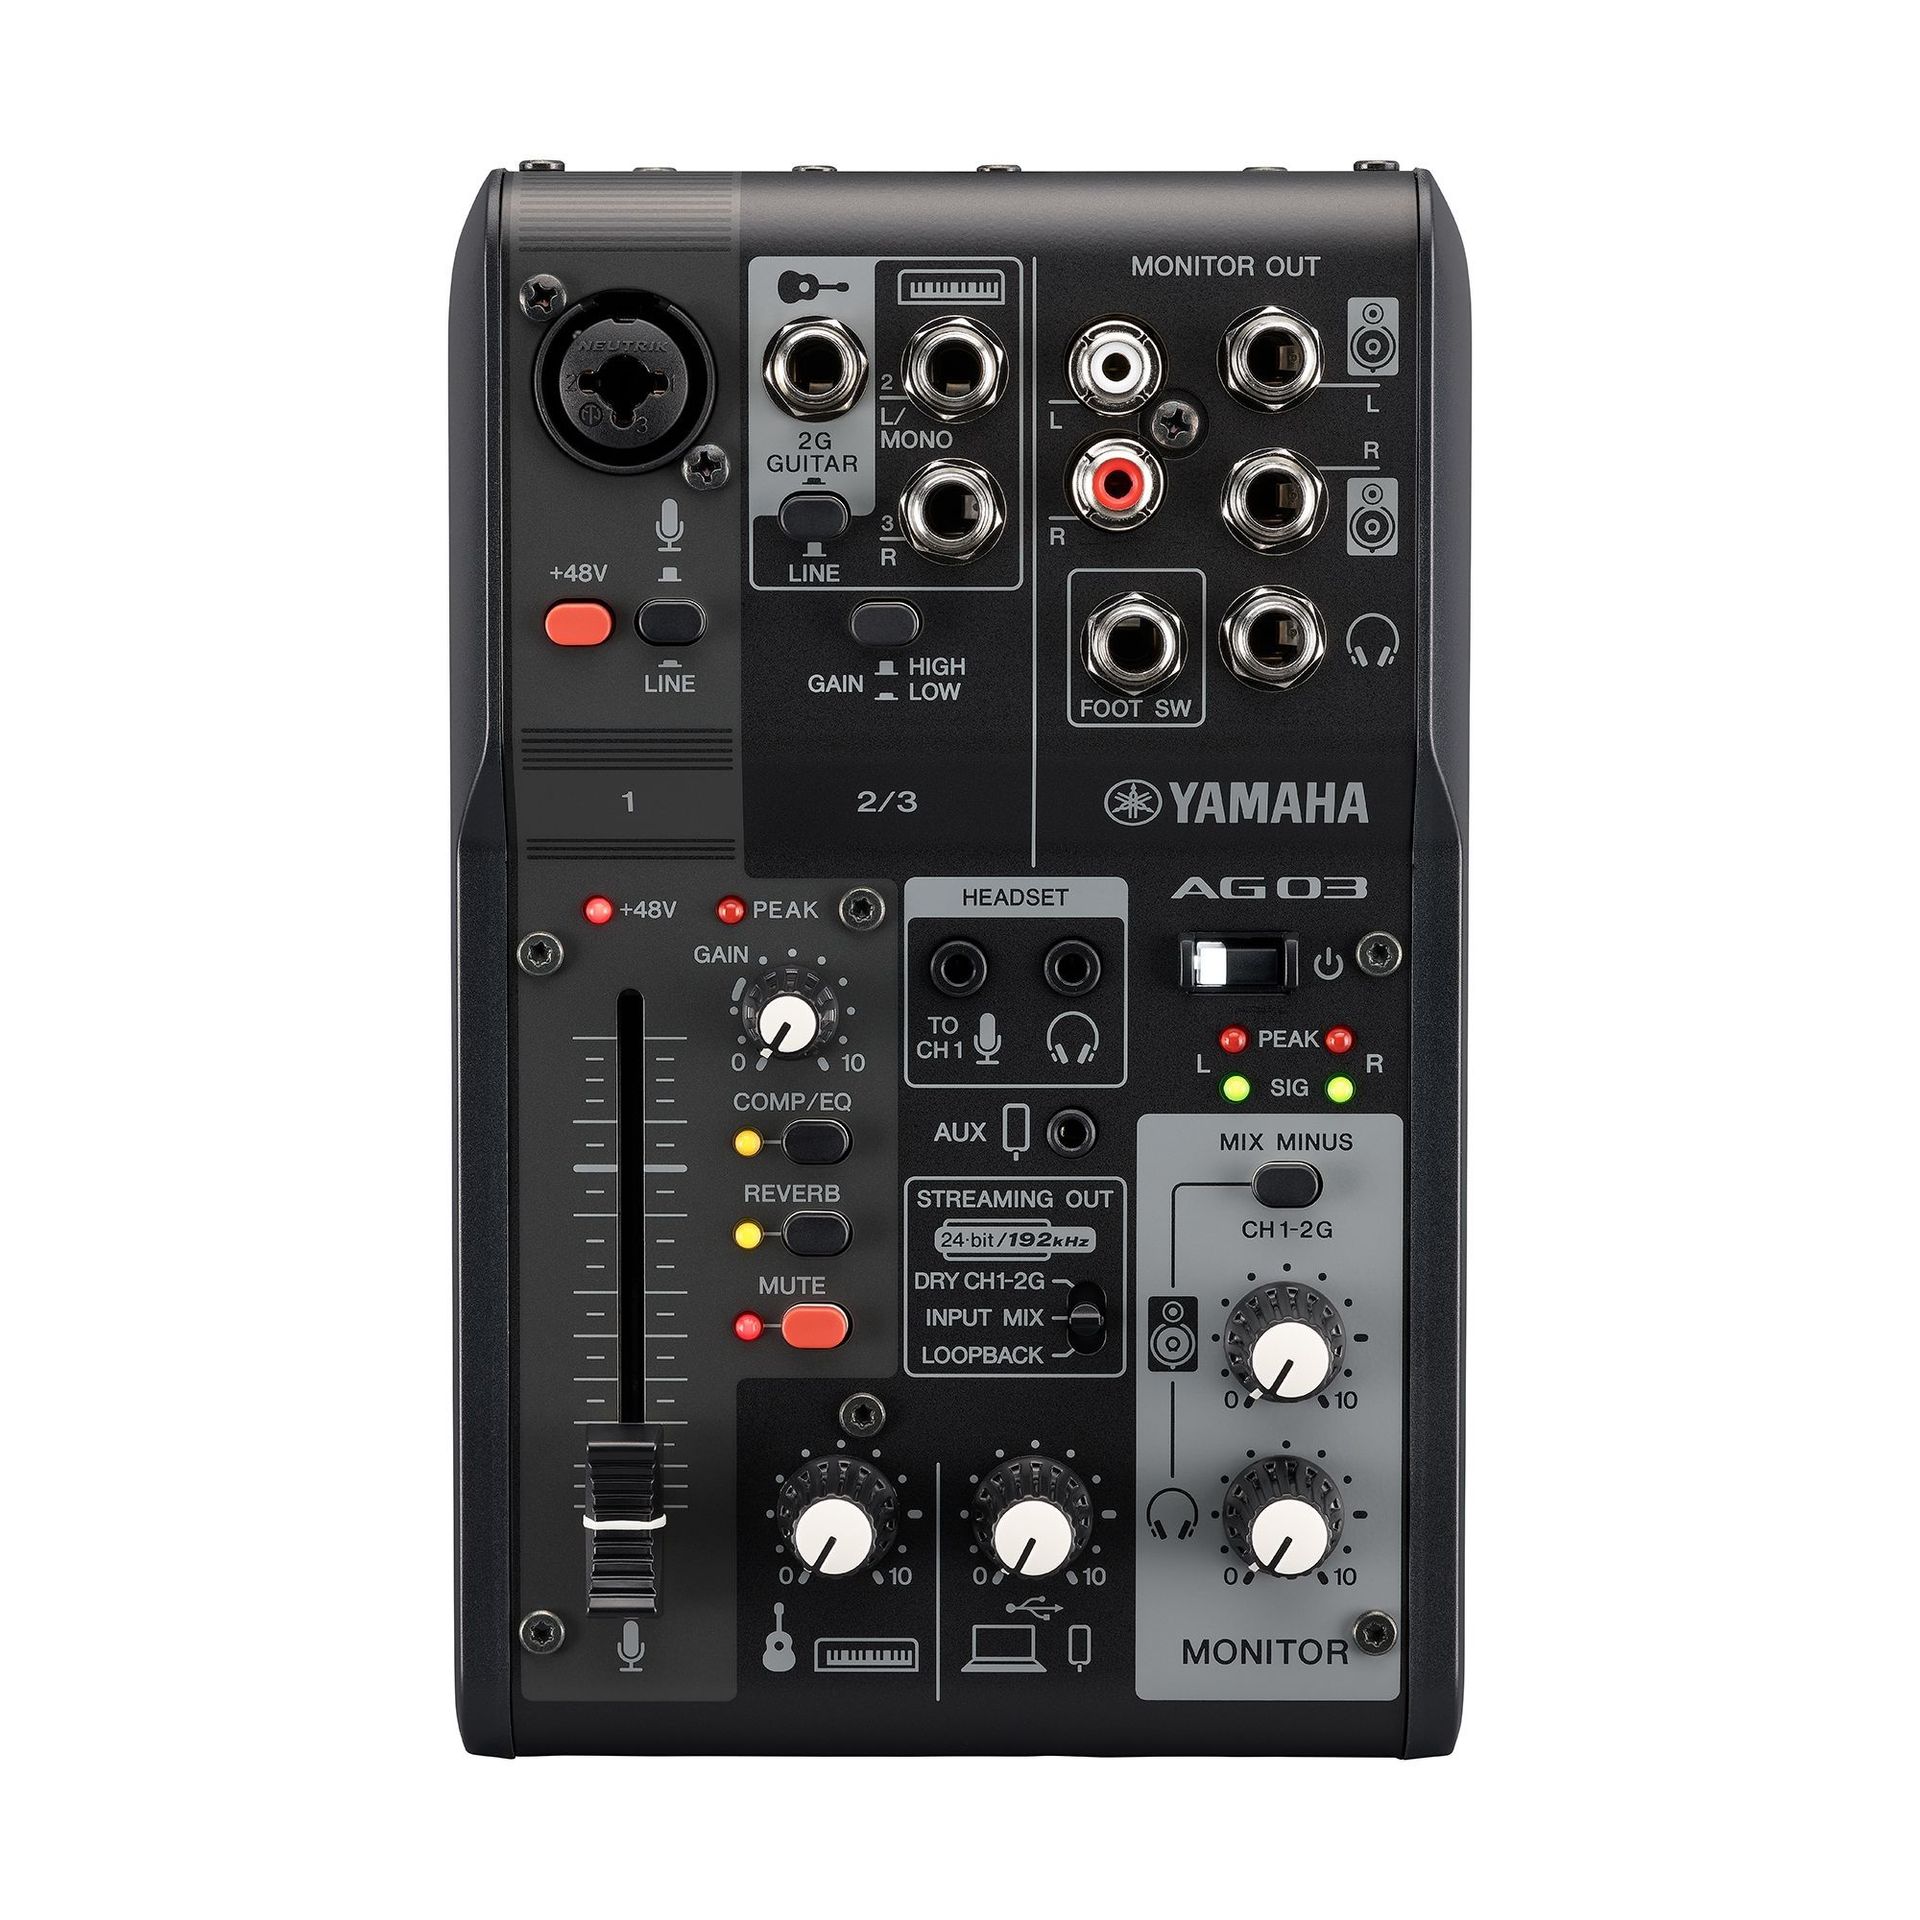 Yamaha AG03 MK2 BK Mixer mit internem USB 2.0 Audiointerface Farbe: schwarz